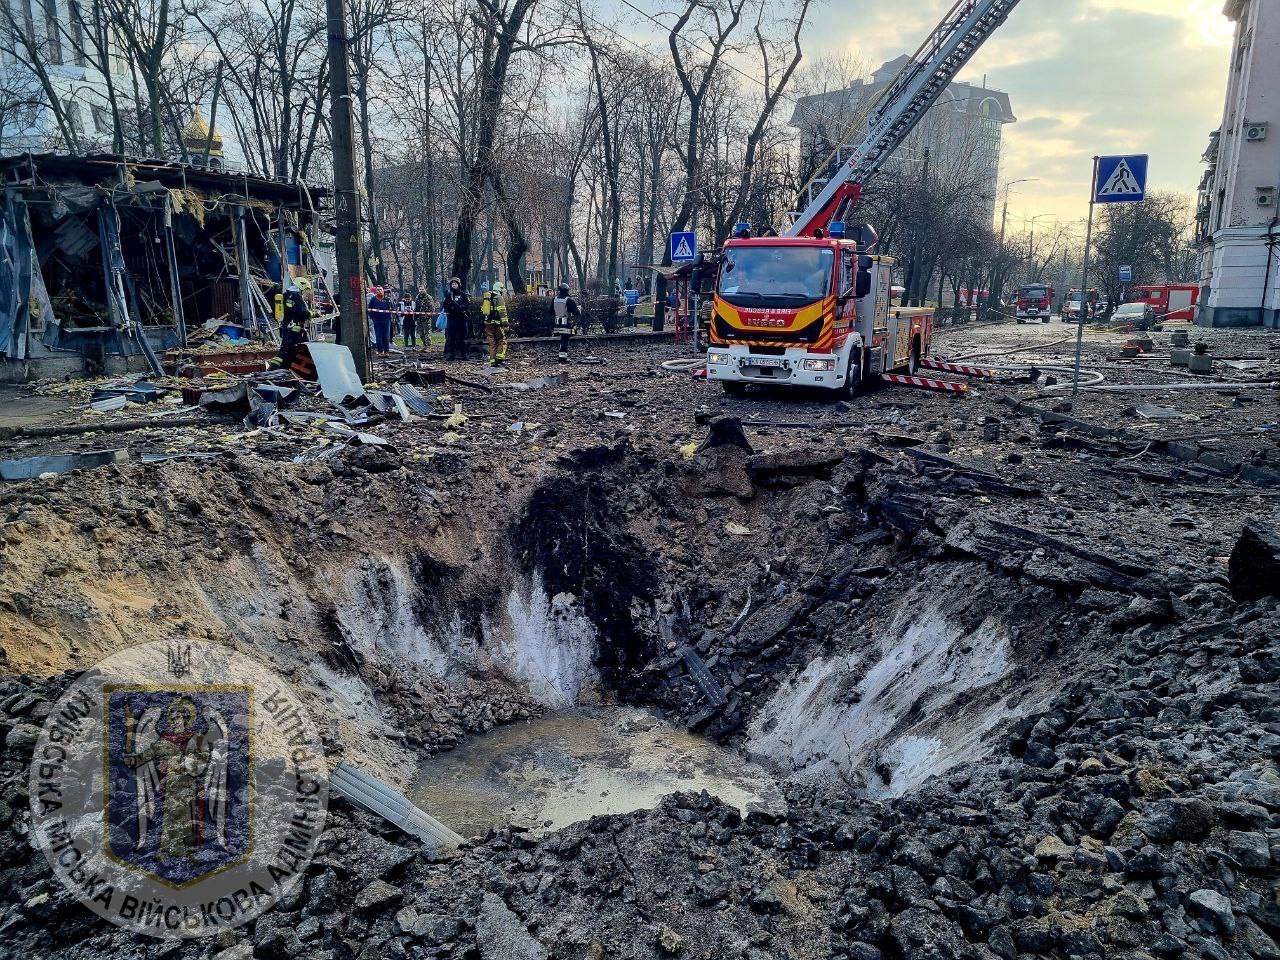 基輔市傳出爆炸聲響 烏軍通報俄大規模空襲威脅